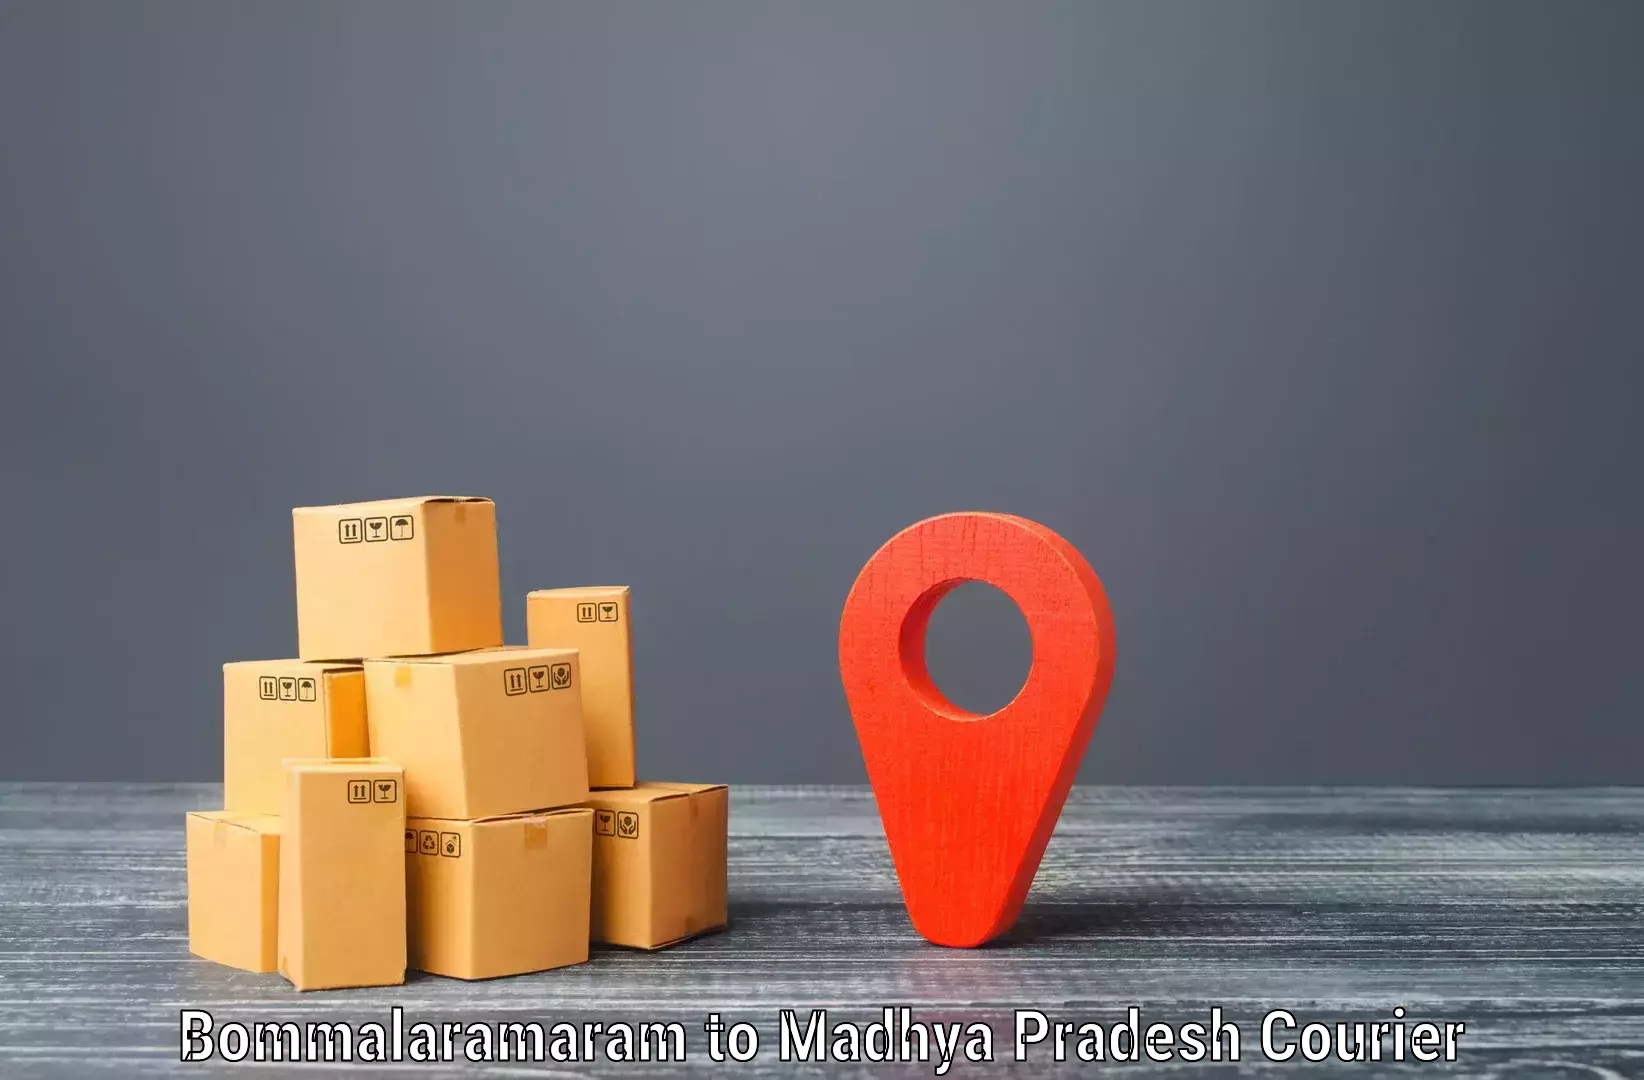 Express postal services in Bommalaramaram to Jaisinghnagar